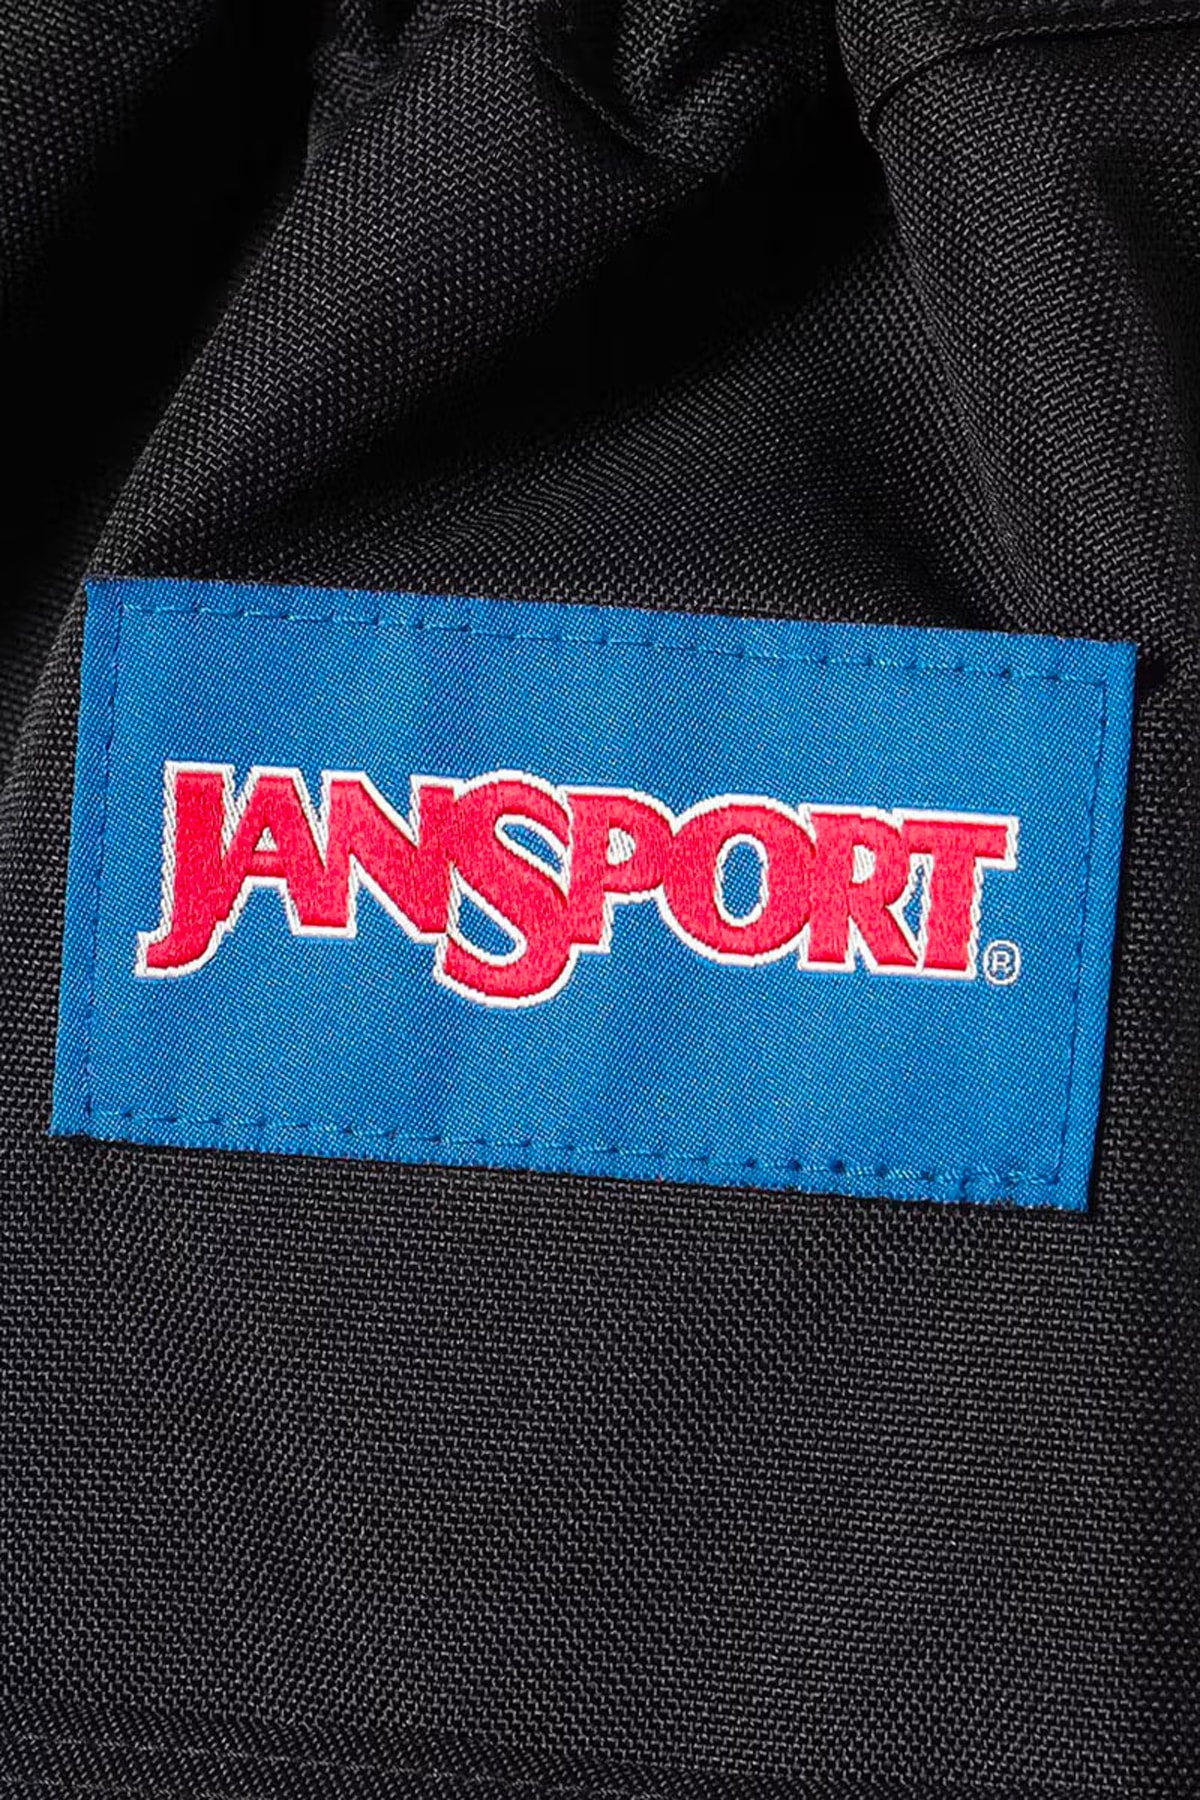 BEAMS x JanSport 全新聯名包款正式曝光